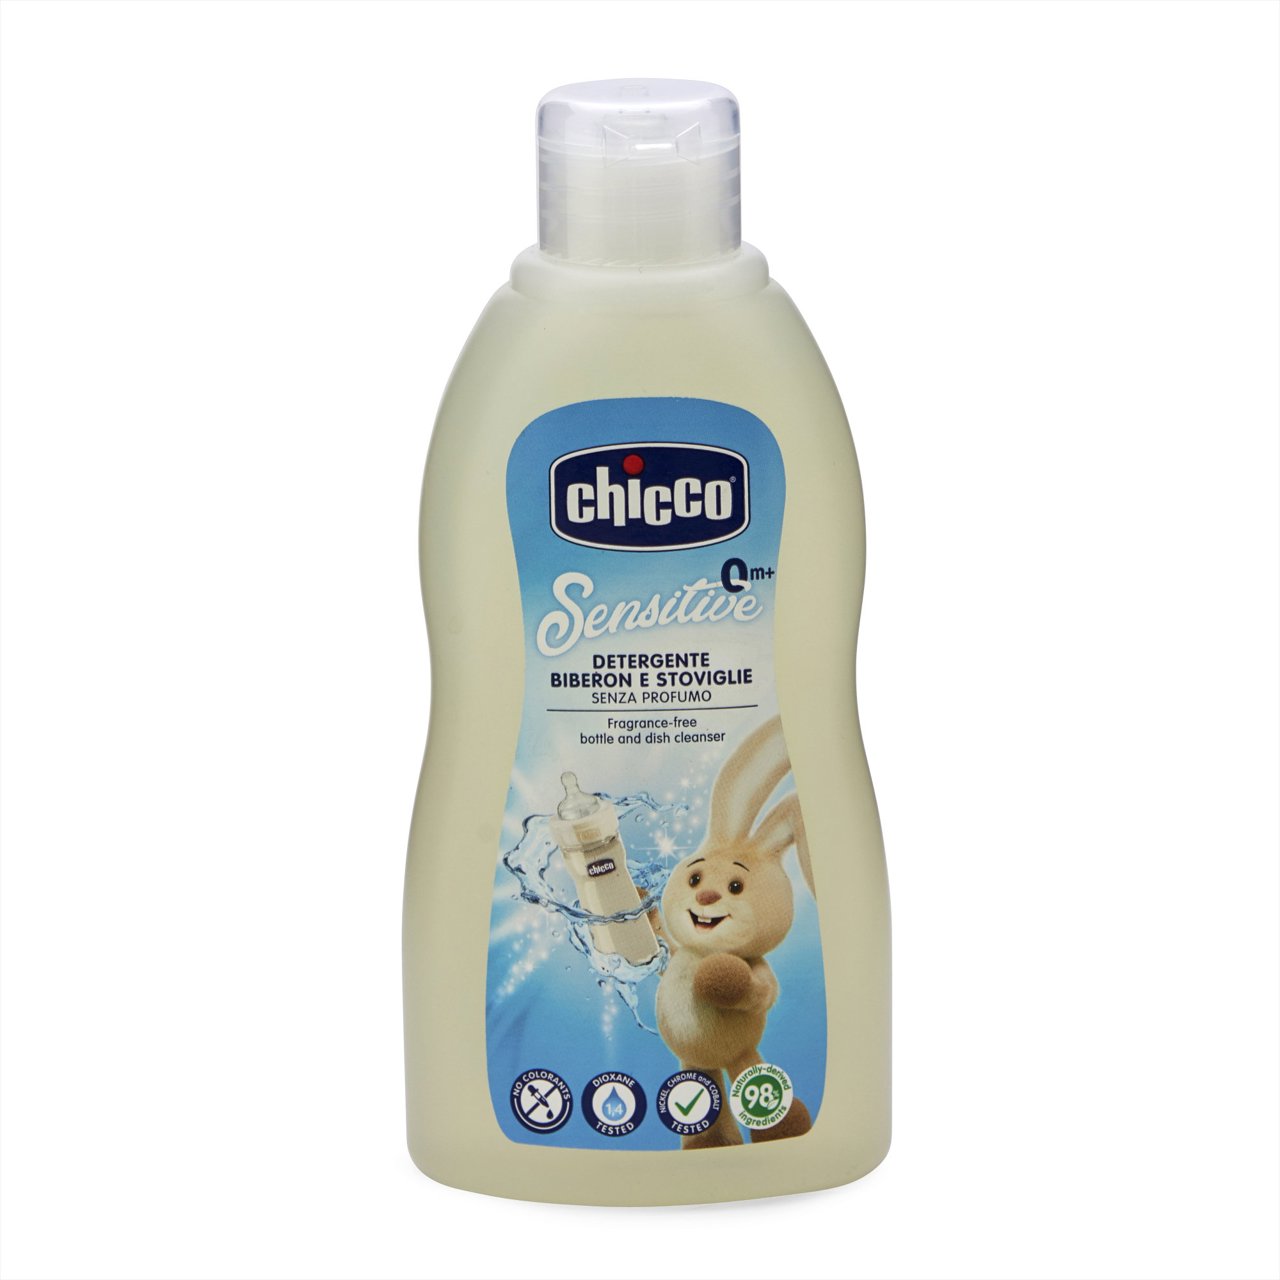 🌟 Productos #chicco, para la higiene de los biberones y